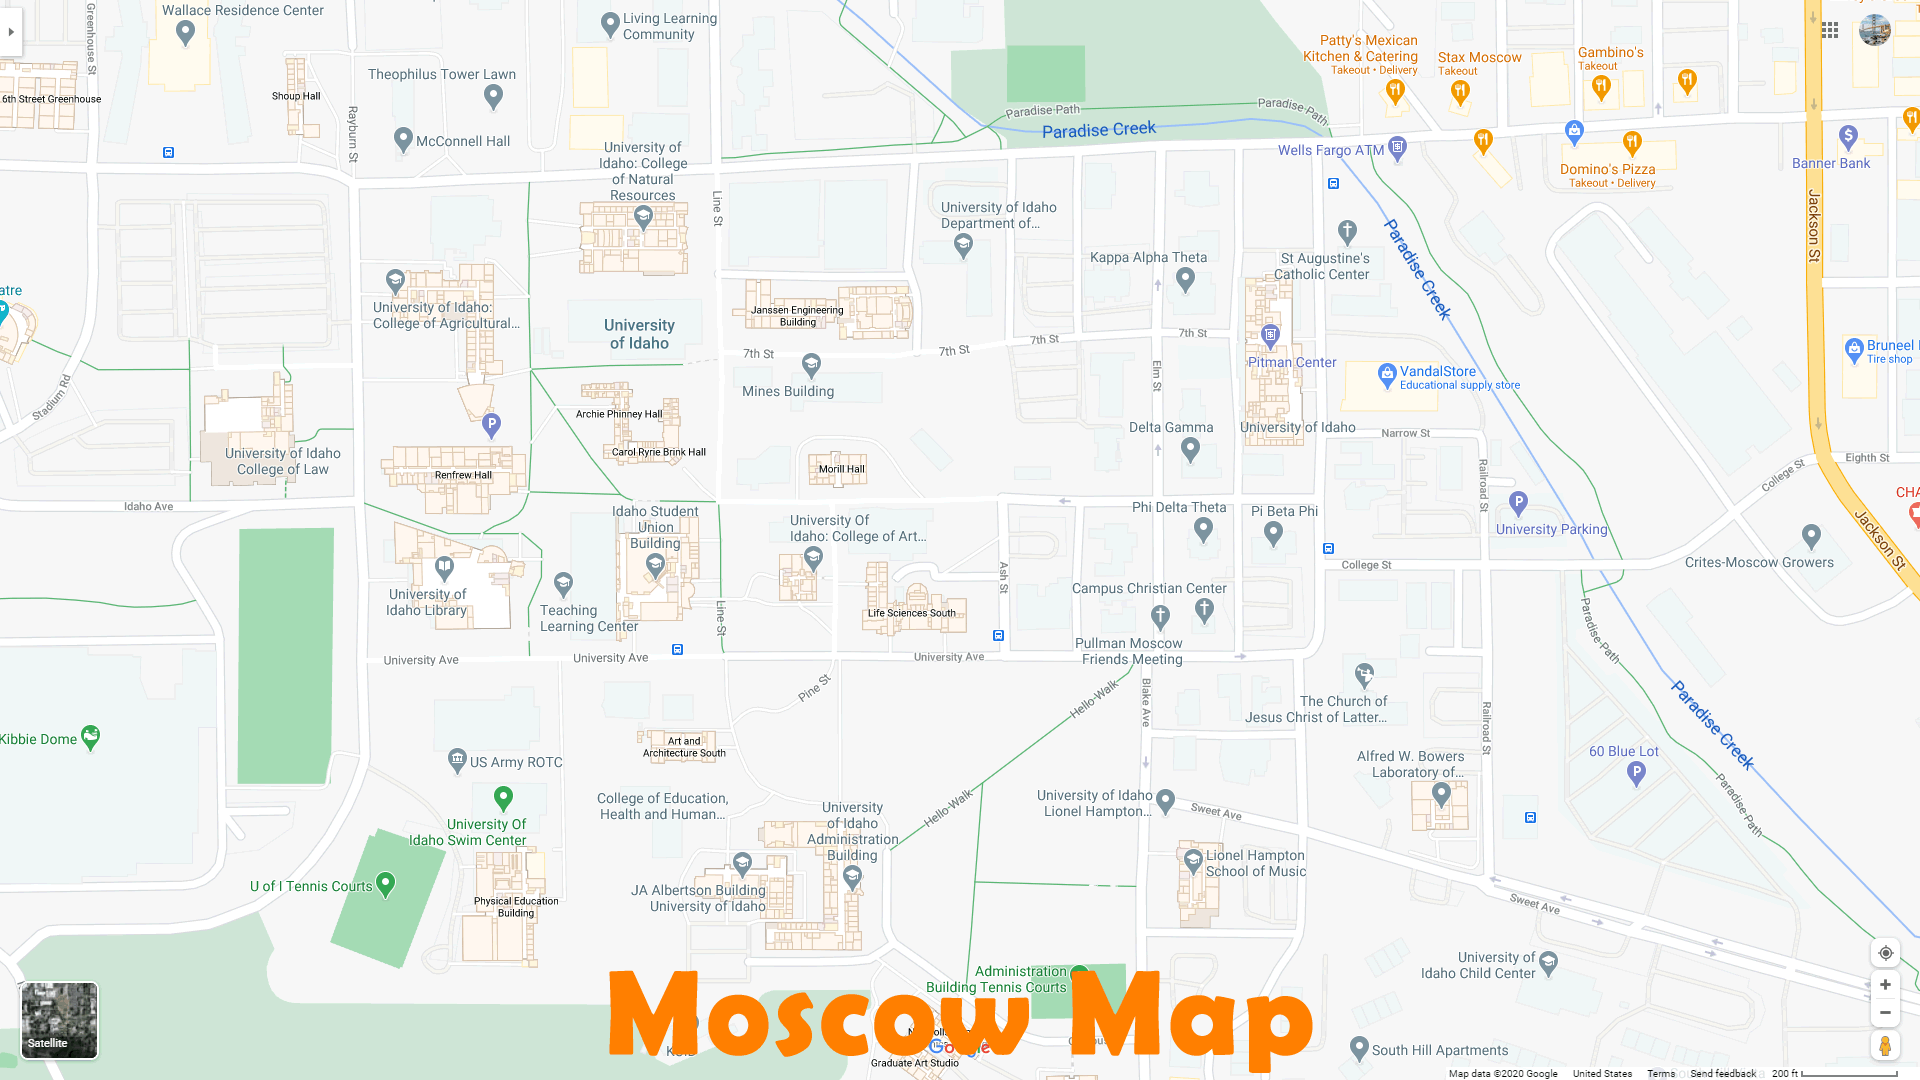 Moscow idaho Map